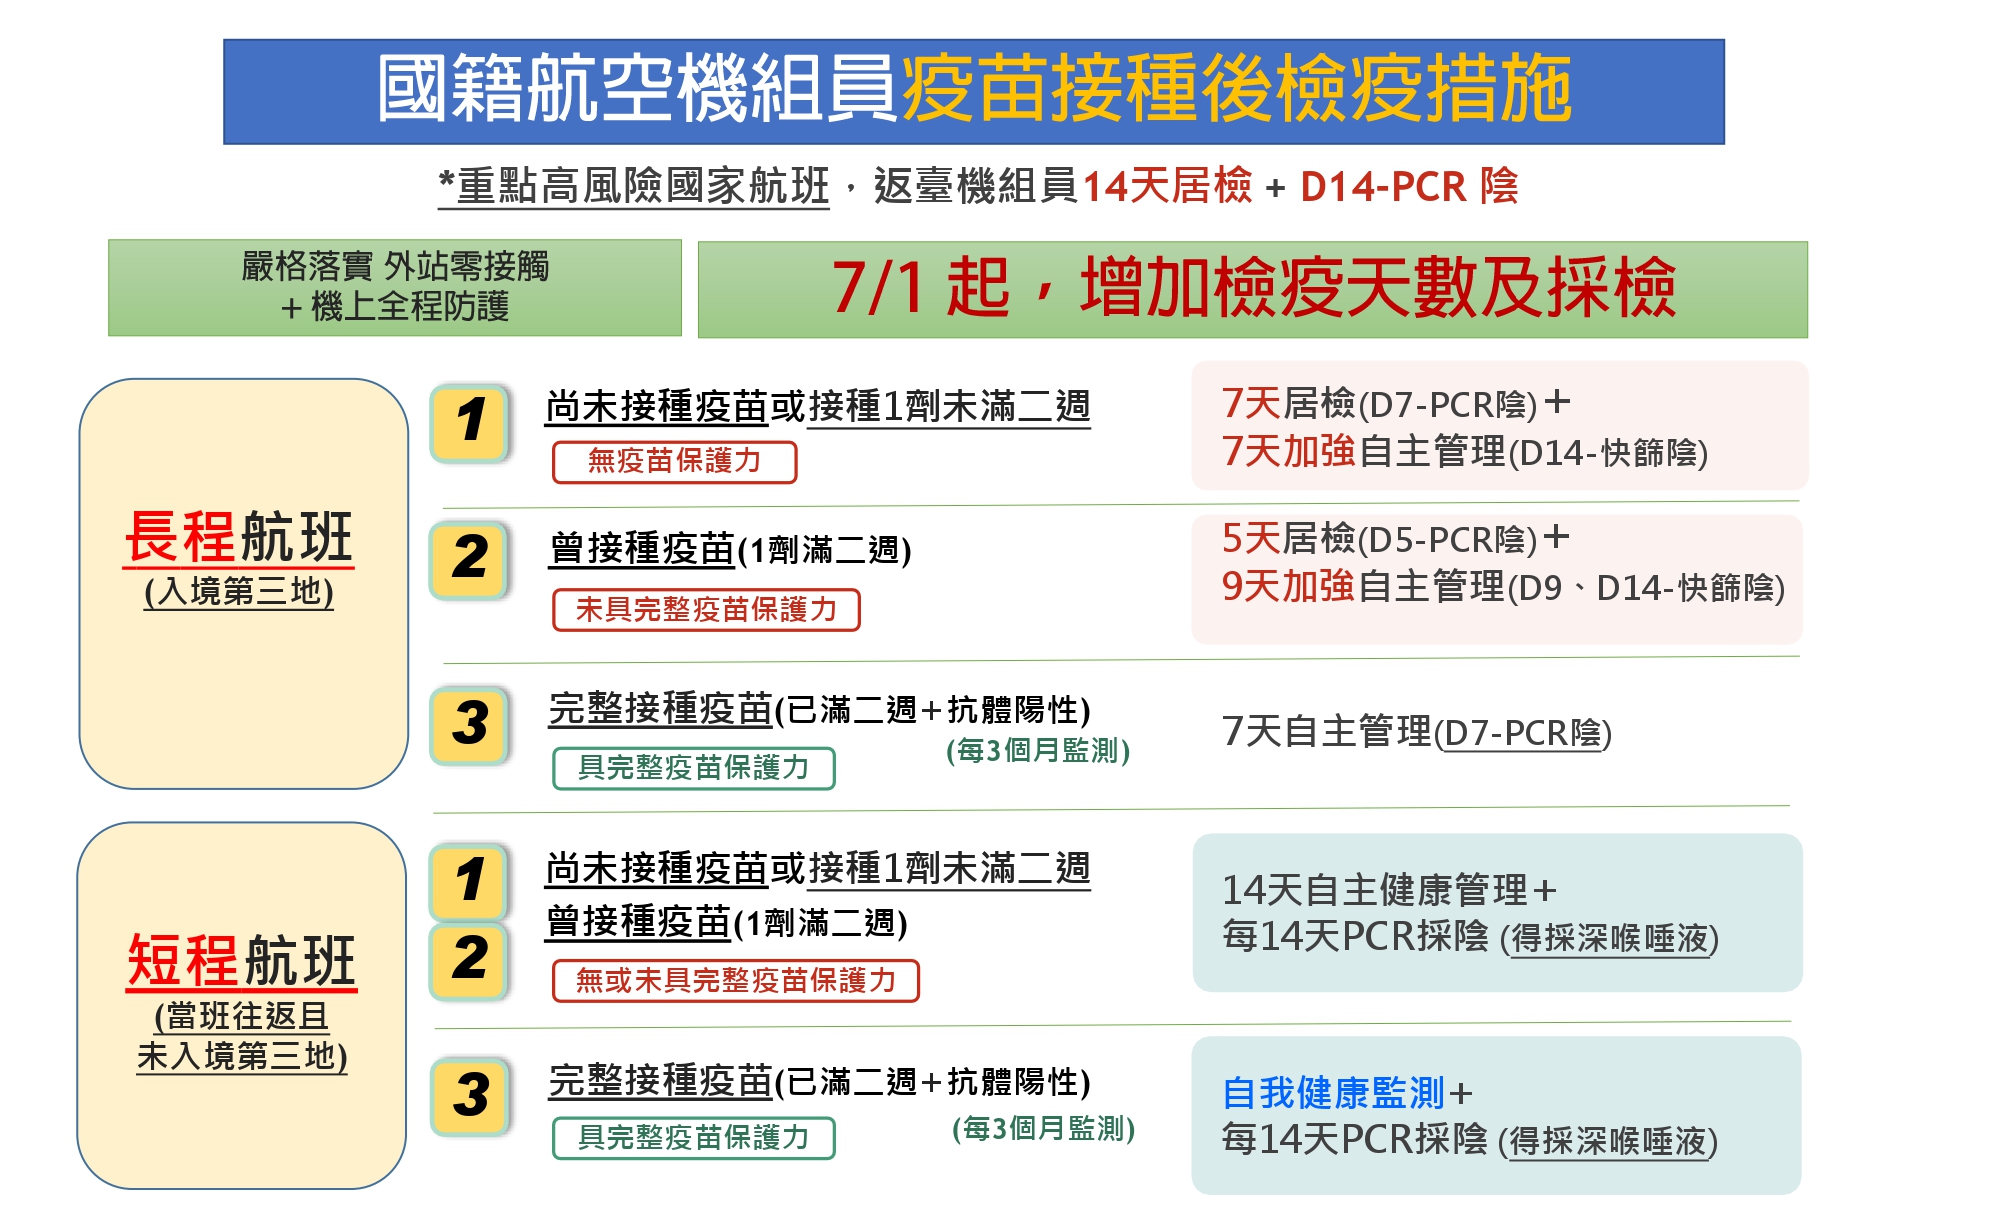 Từ ngày 1/7, thành viên tổ bay các chặng bay đường dài nhập cảnh từ các quốc gia và khu vực cảnh báo dịch bệnh cấp độ 3, sẽ áp dụng biện pháp cách ly kiểm dịch nghiêm ngặt hoặc nới lỏng tùy thuộc vào tình hình tiêm chủng vắc-xin của từng người. (Nguồn ảnh: Cục Hàng không dân dụng Đài Loan)